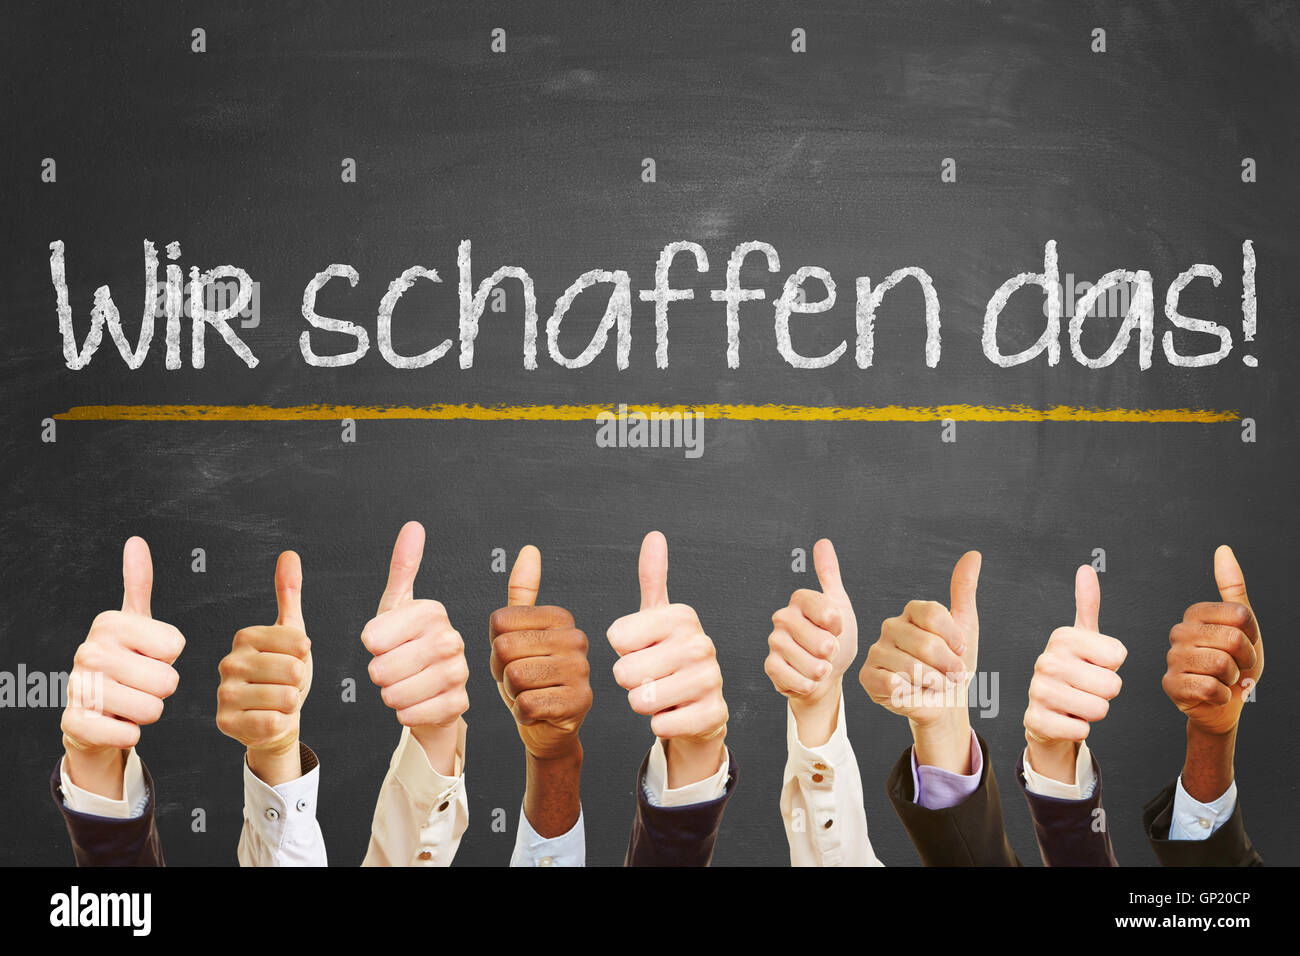 Motivation Slogan "wir schaffen das !" (nous pouvons le faire) en allemand on chalkboard Banque D'Images